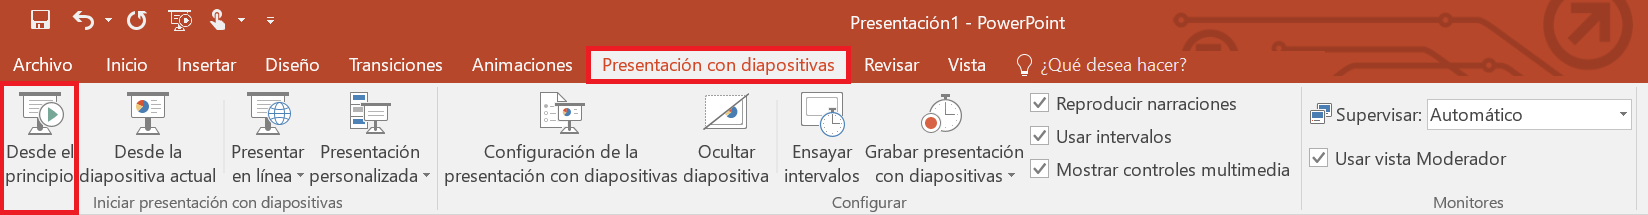 PowerPoint: iniciar presentación de diapositivas.